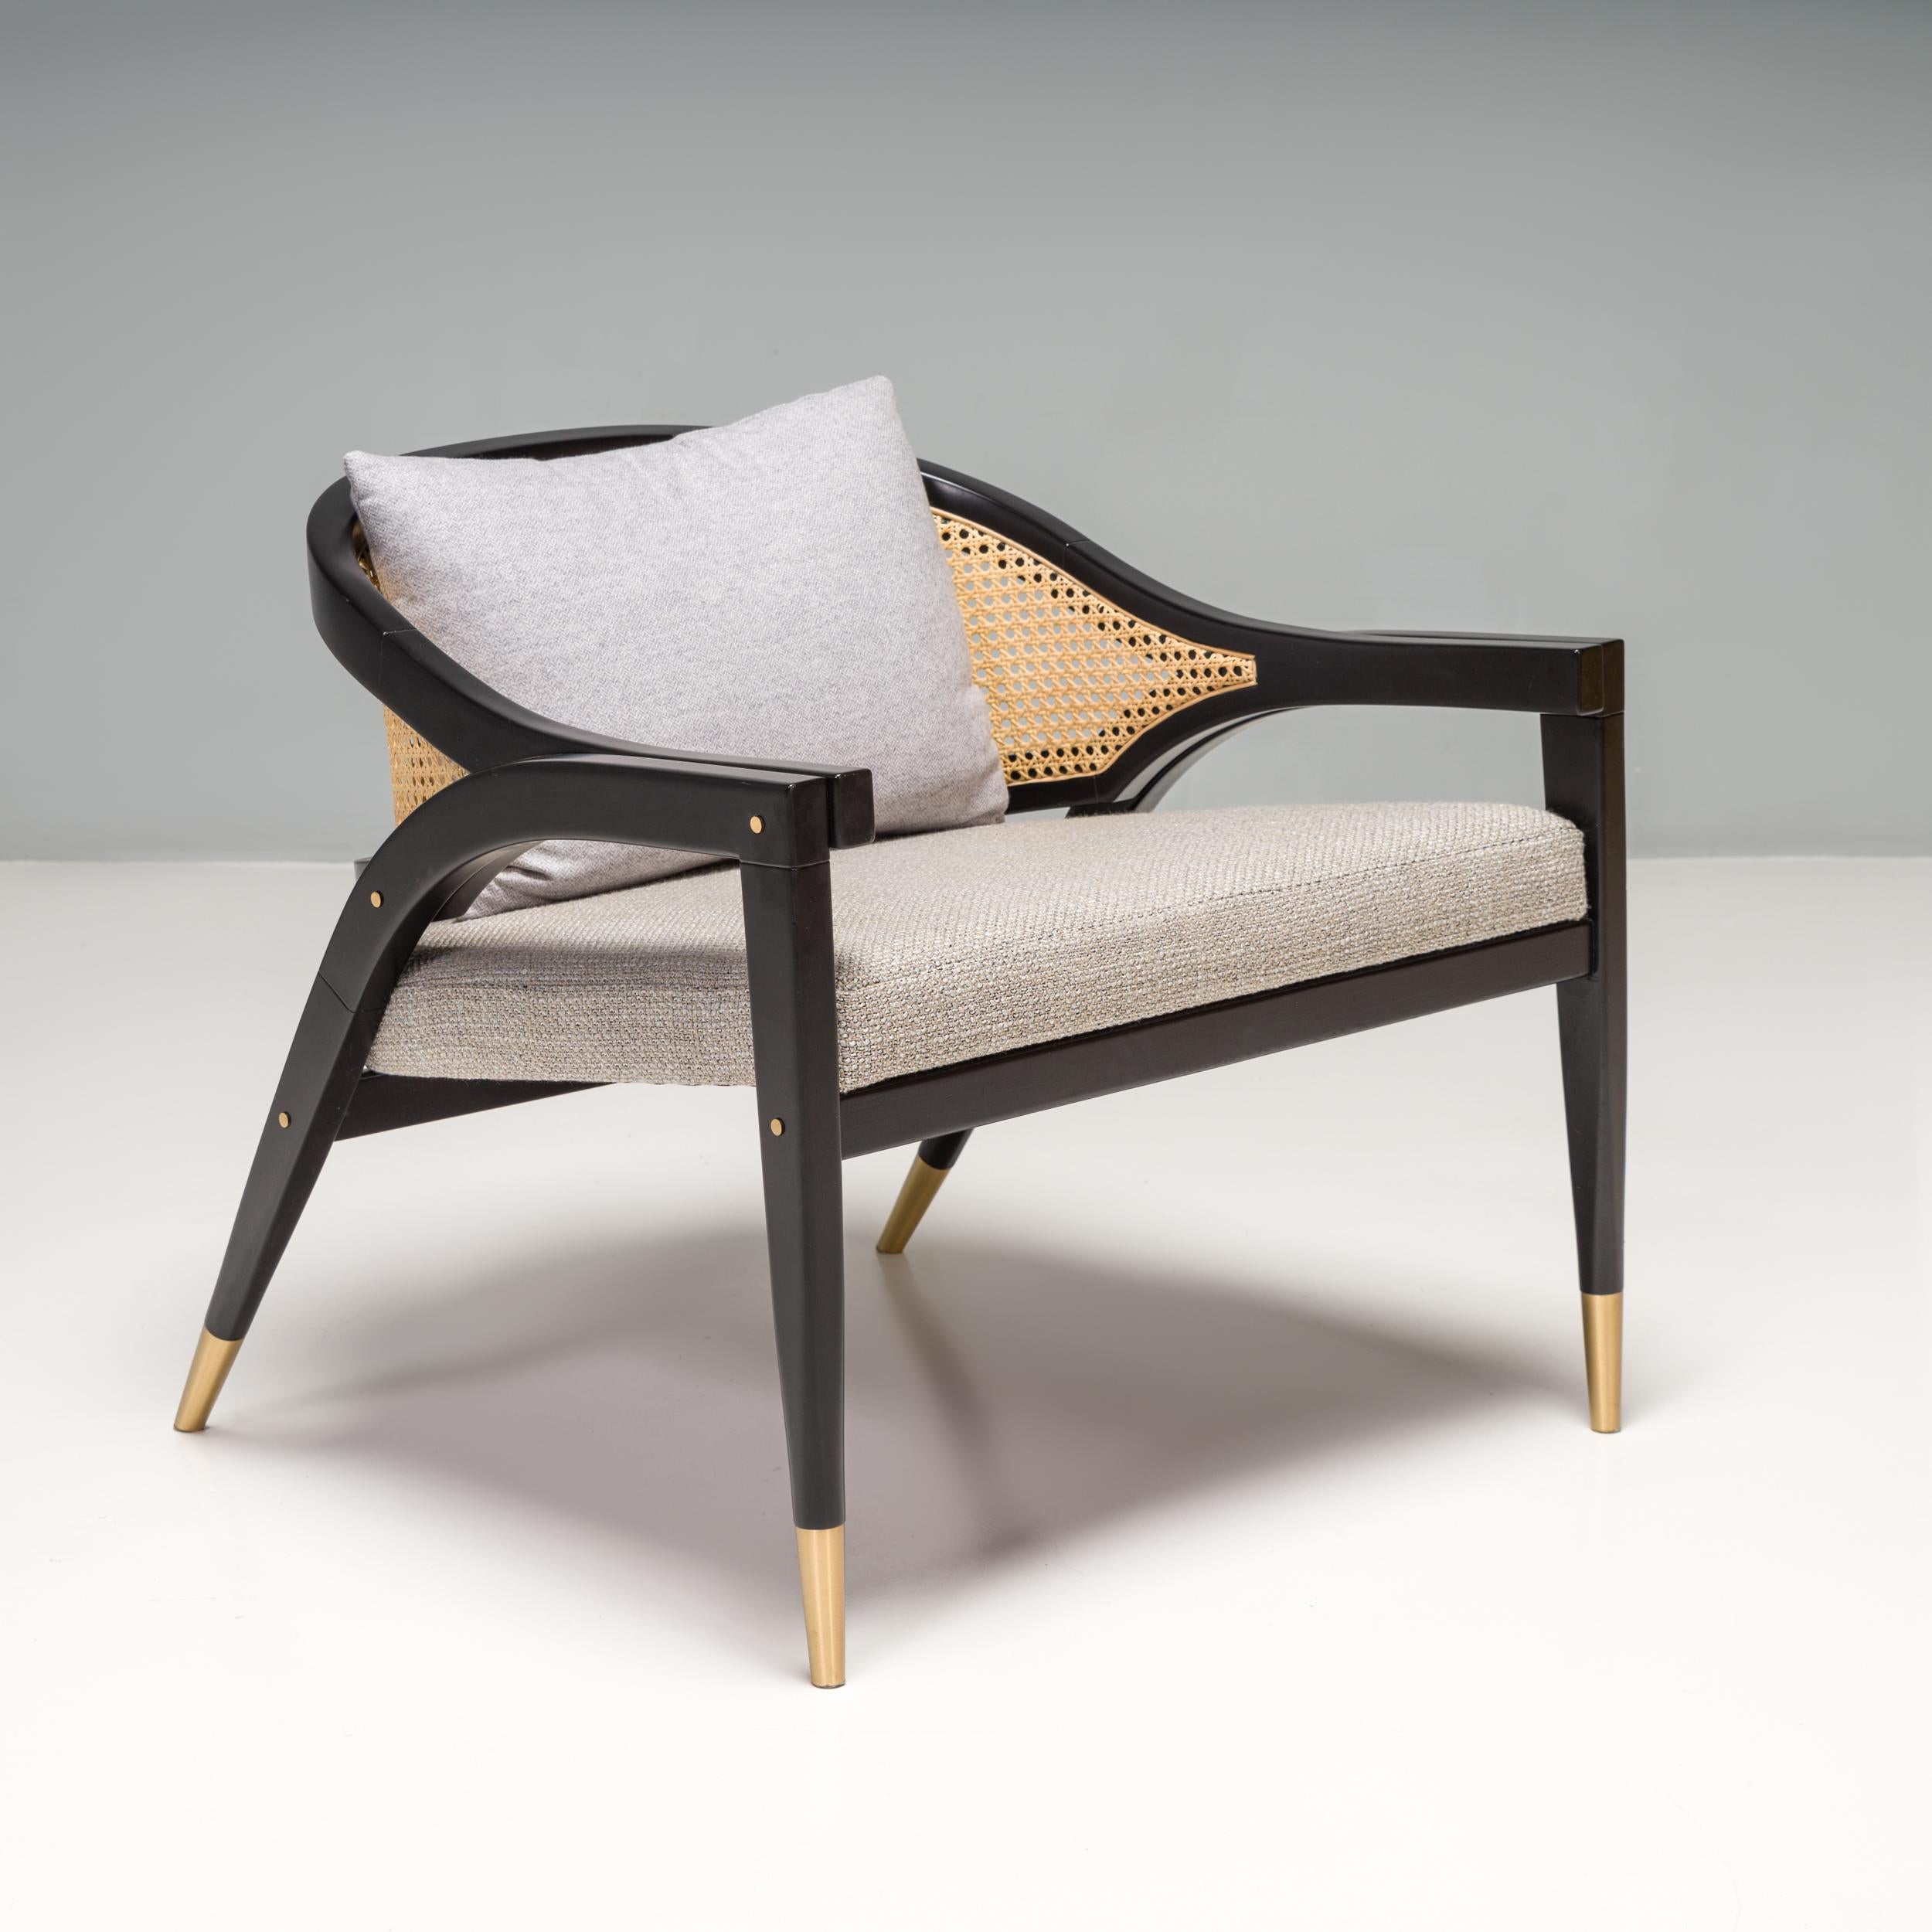 Conçu par DUISTT et fabriqué à la main au Portugal, le fauteuil Wormley s'inspire de la chaise de capitaine Edward Wormley du modernisme américain des années 1950.

Construite à partir d'un cadre en bois de sycomore avec une finition noire satinée,